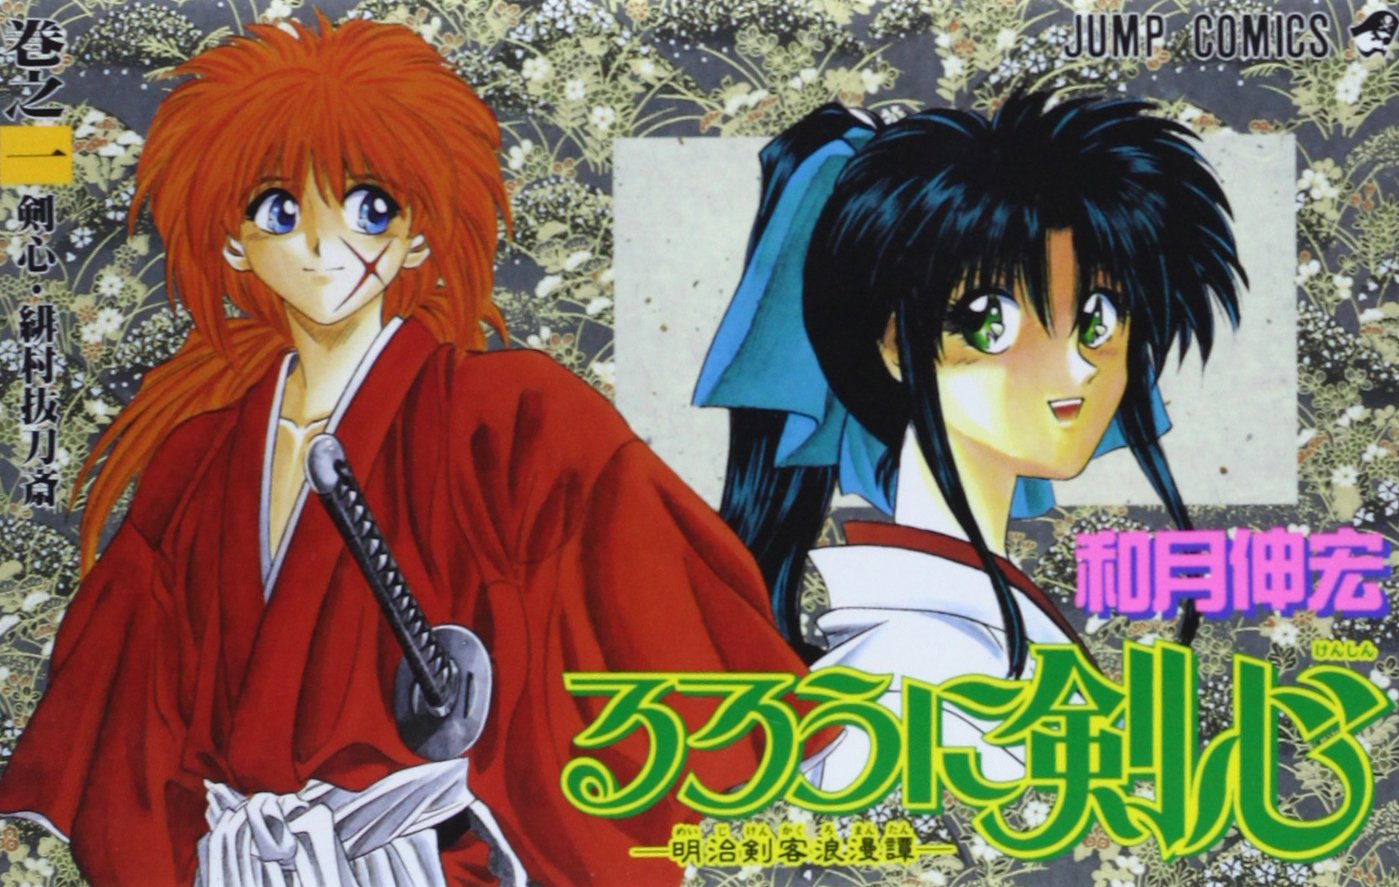 Volume 1, Rurouni Kenshin Wiki